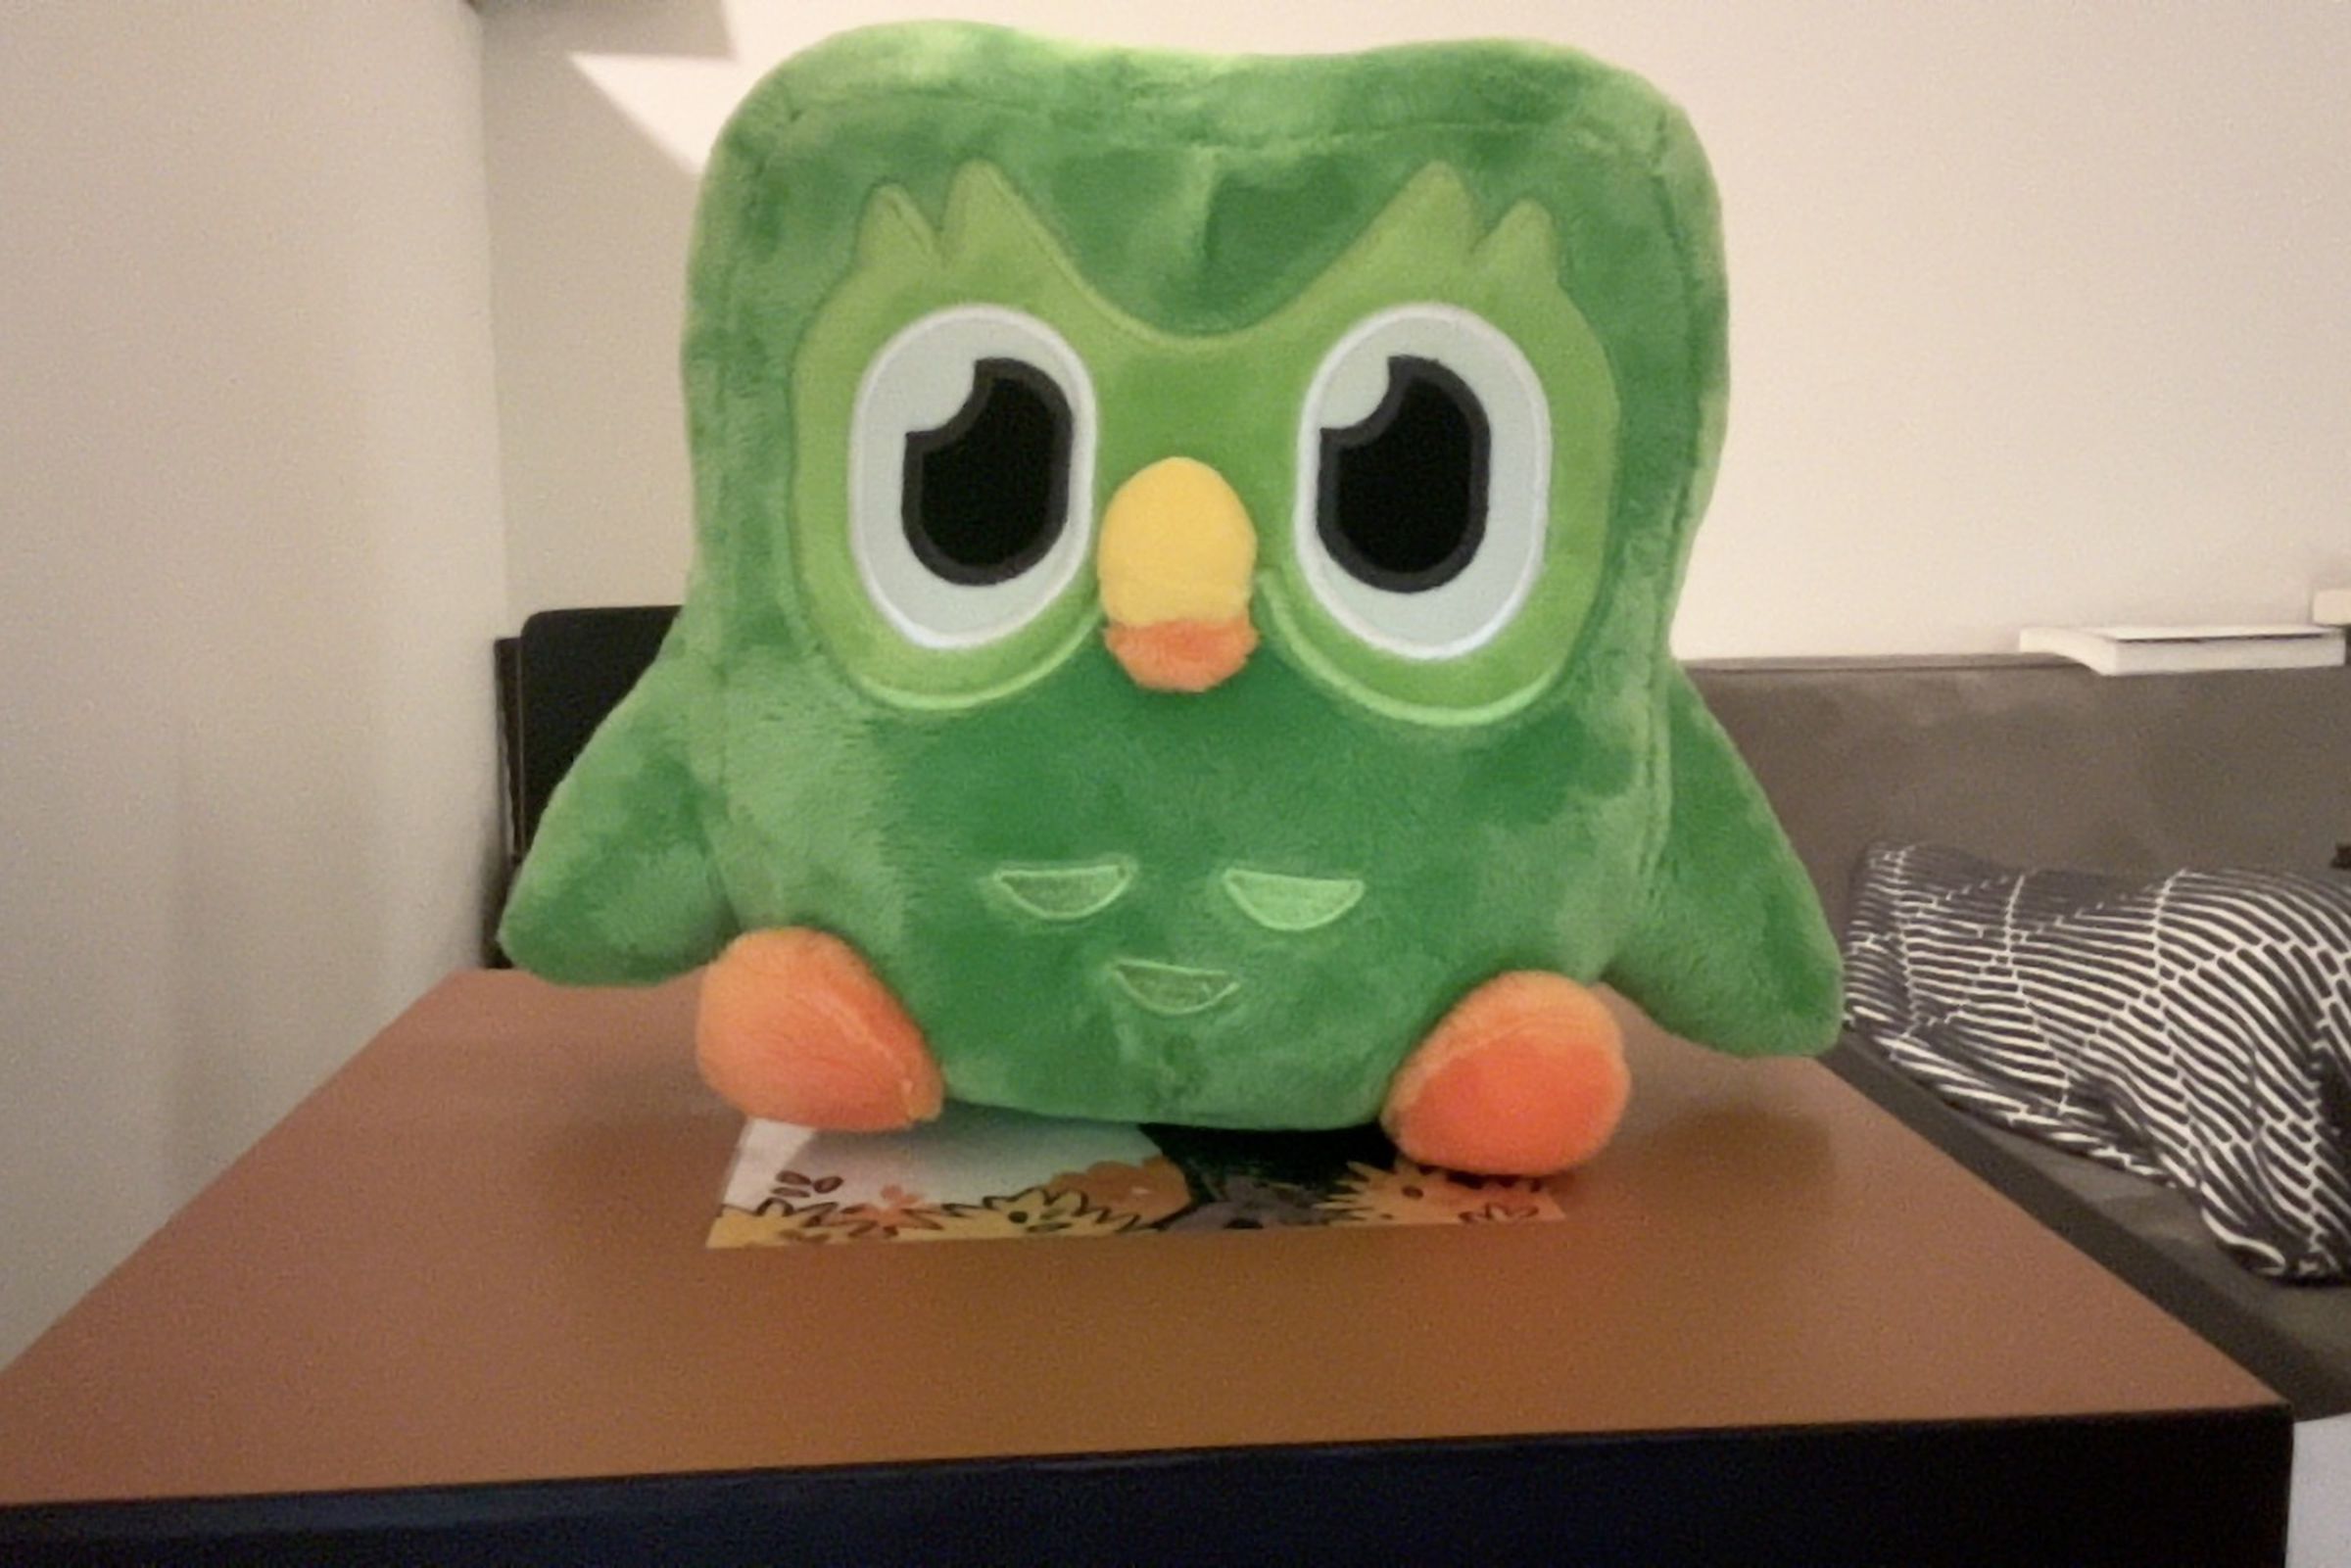 A screenshot of a photo of a Duolingo owl plushie through Continuity Camera.